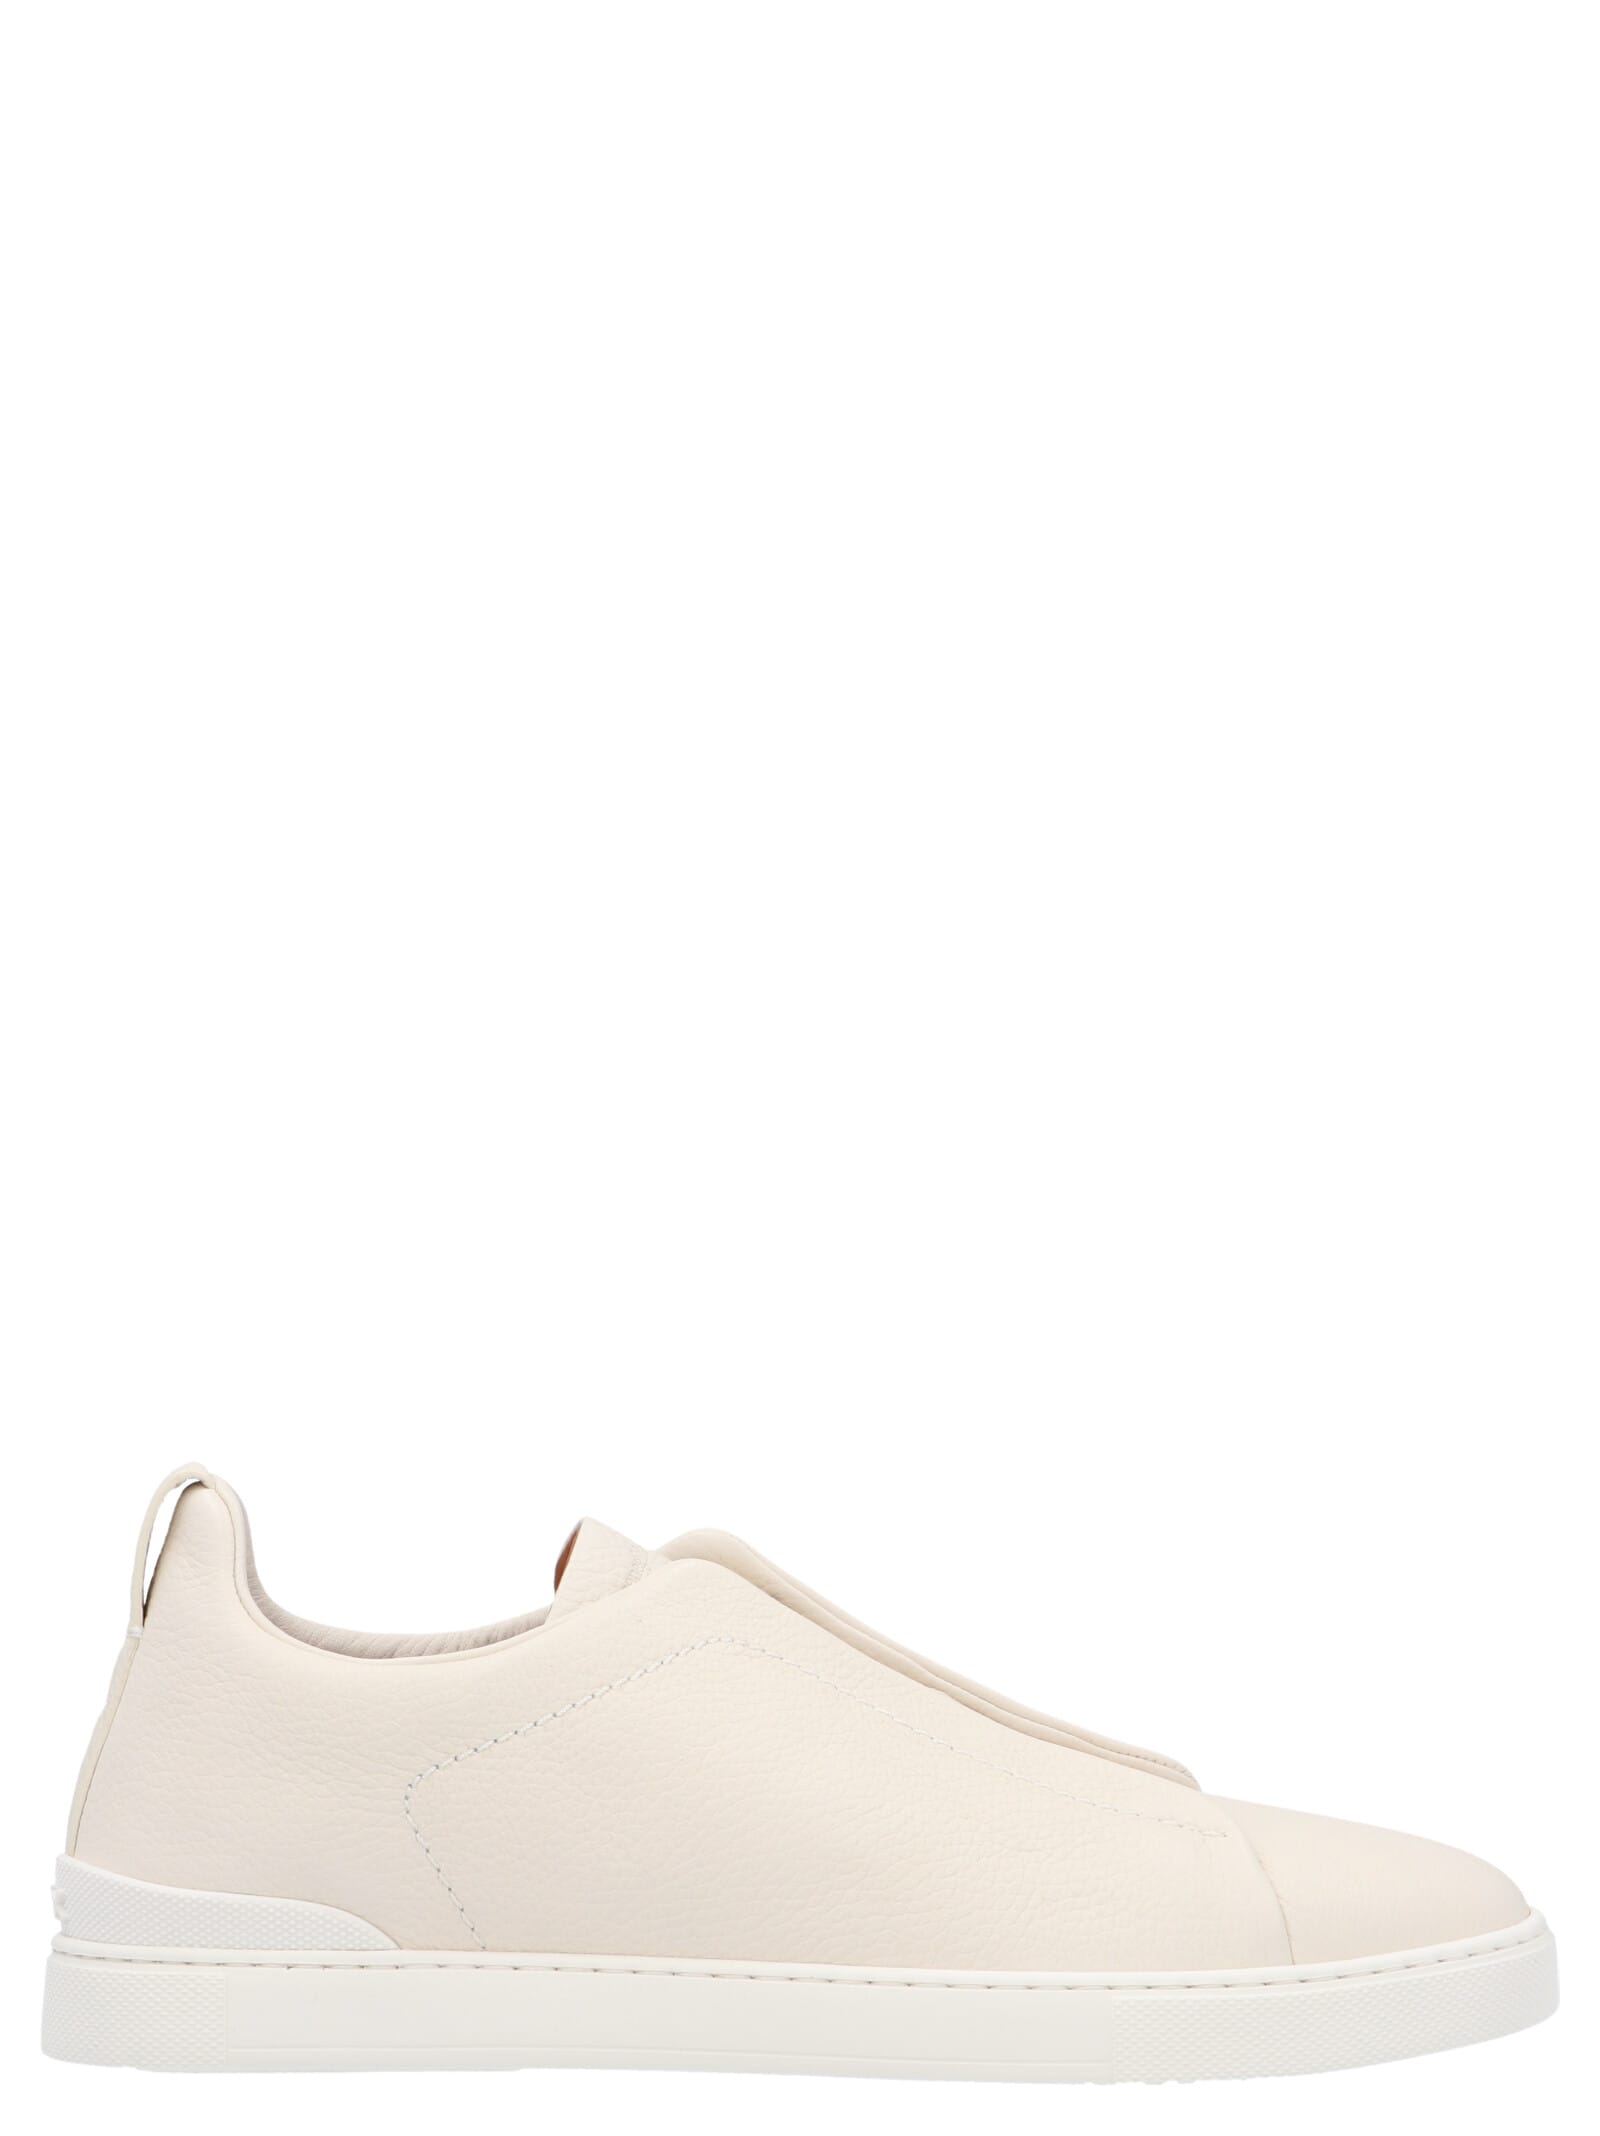 Ermenegildo Zegna Shoes In White | ModeSens